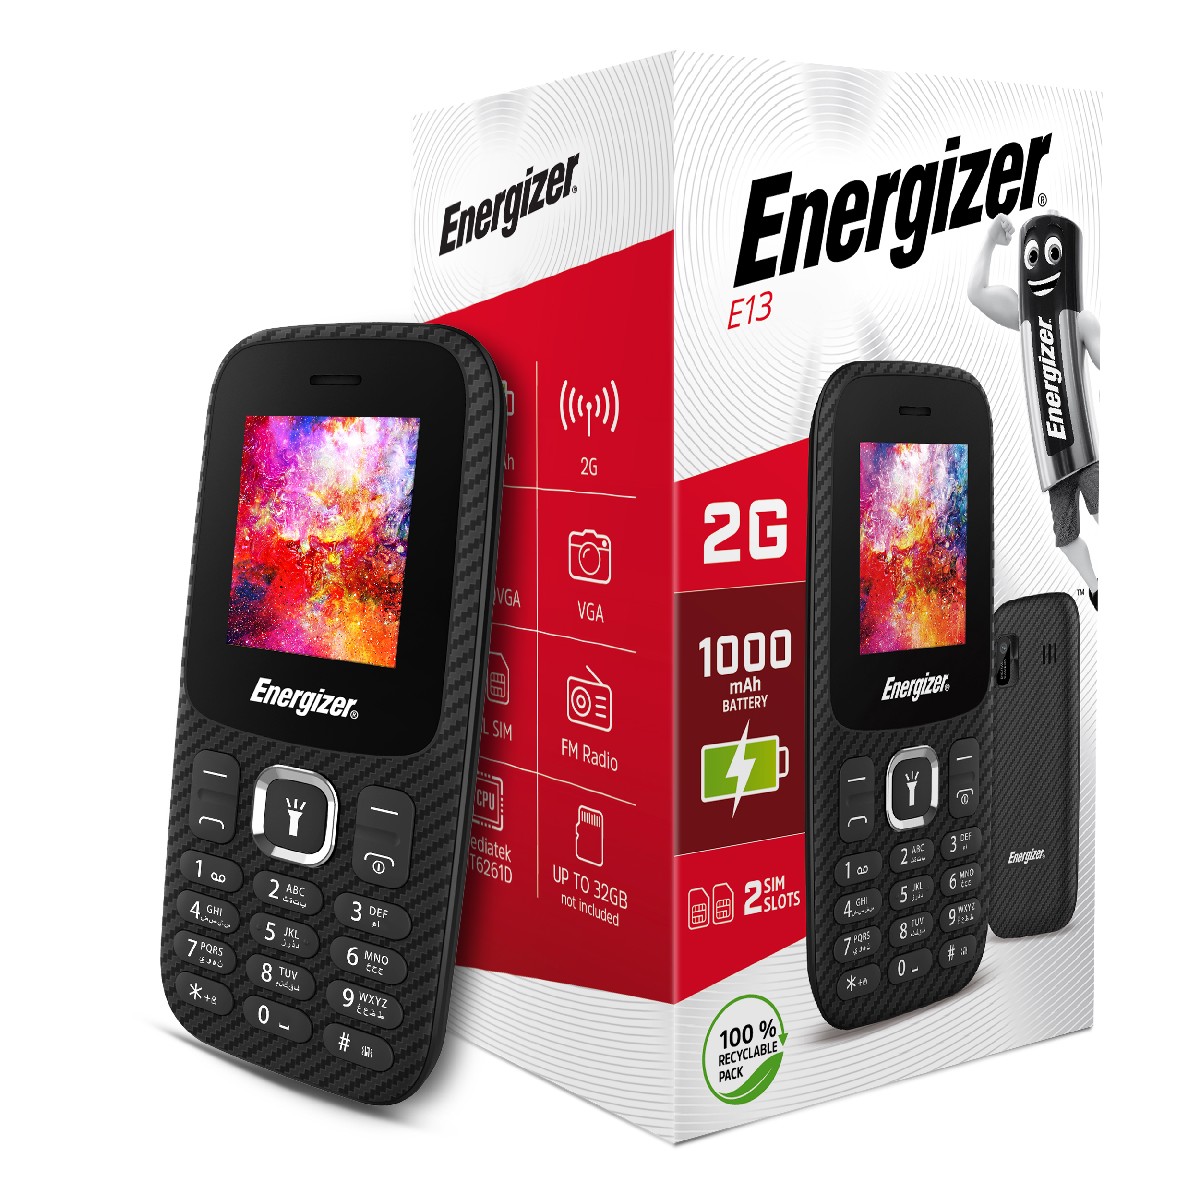 Energizer Energy E13 2G Dual Sim 1.77" 1000 mAh, Bluetooth, Camera